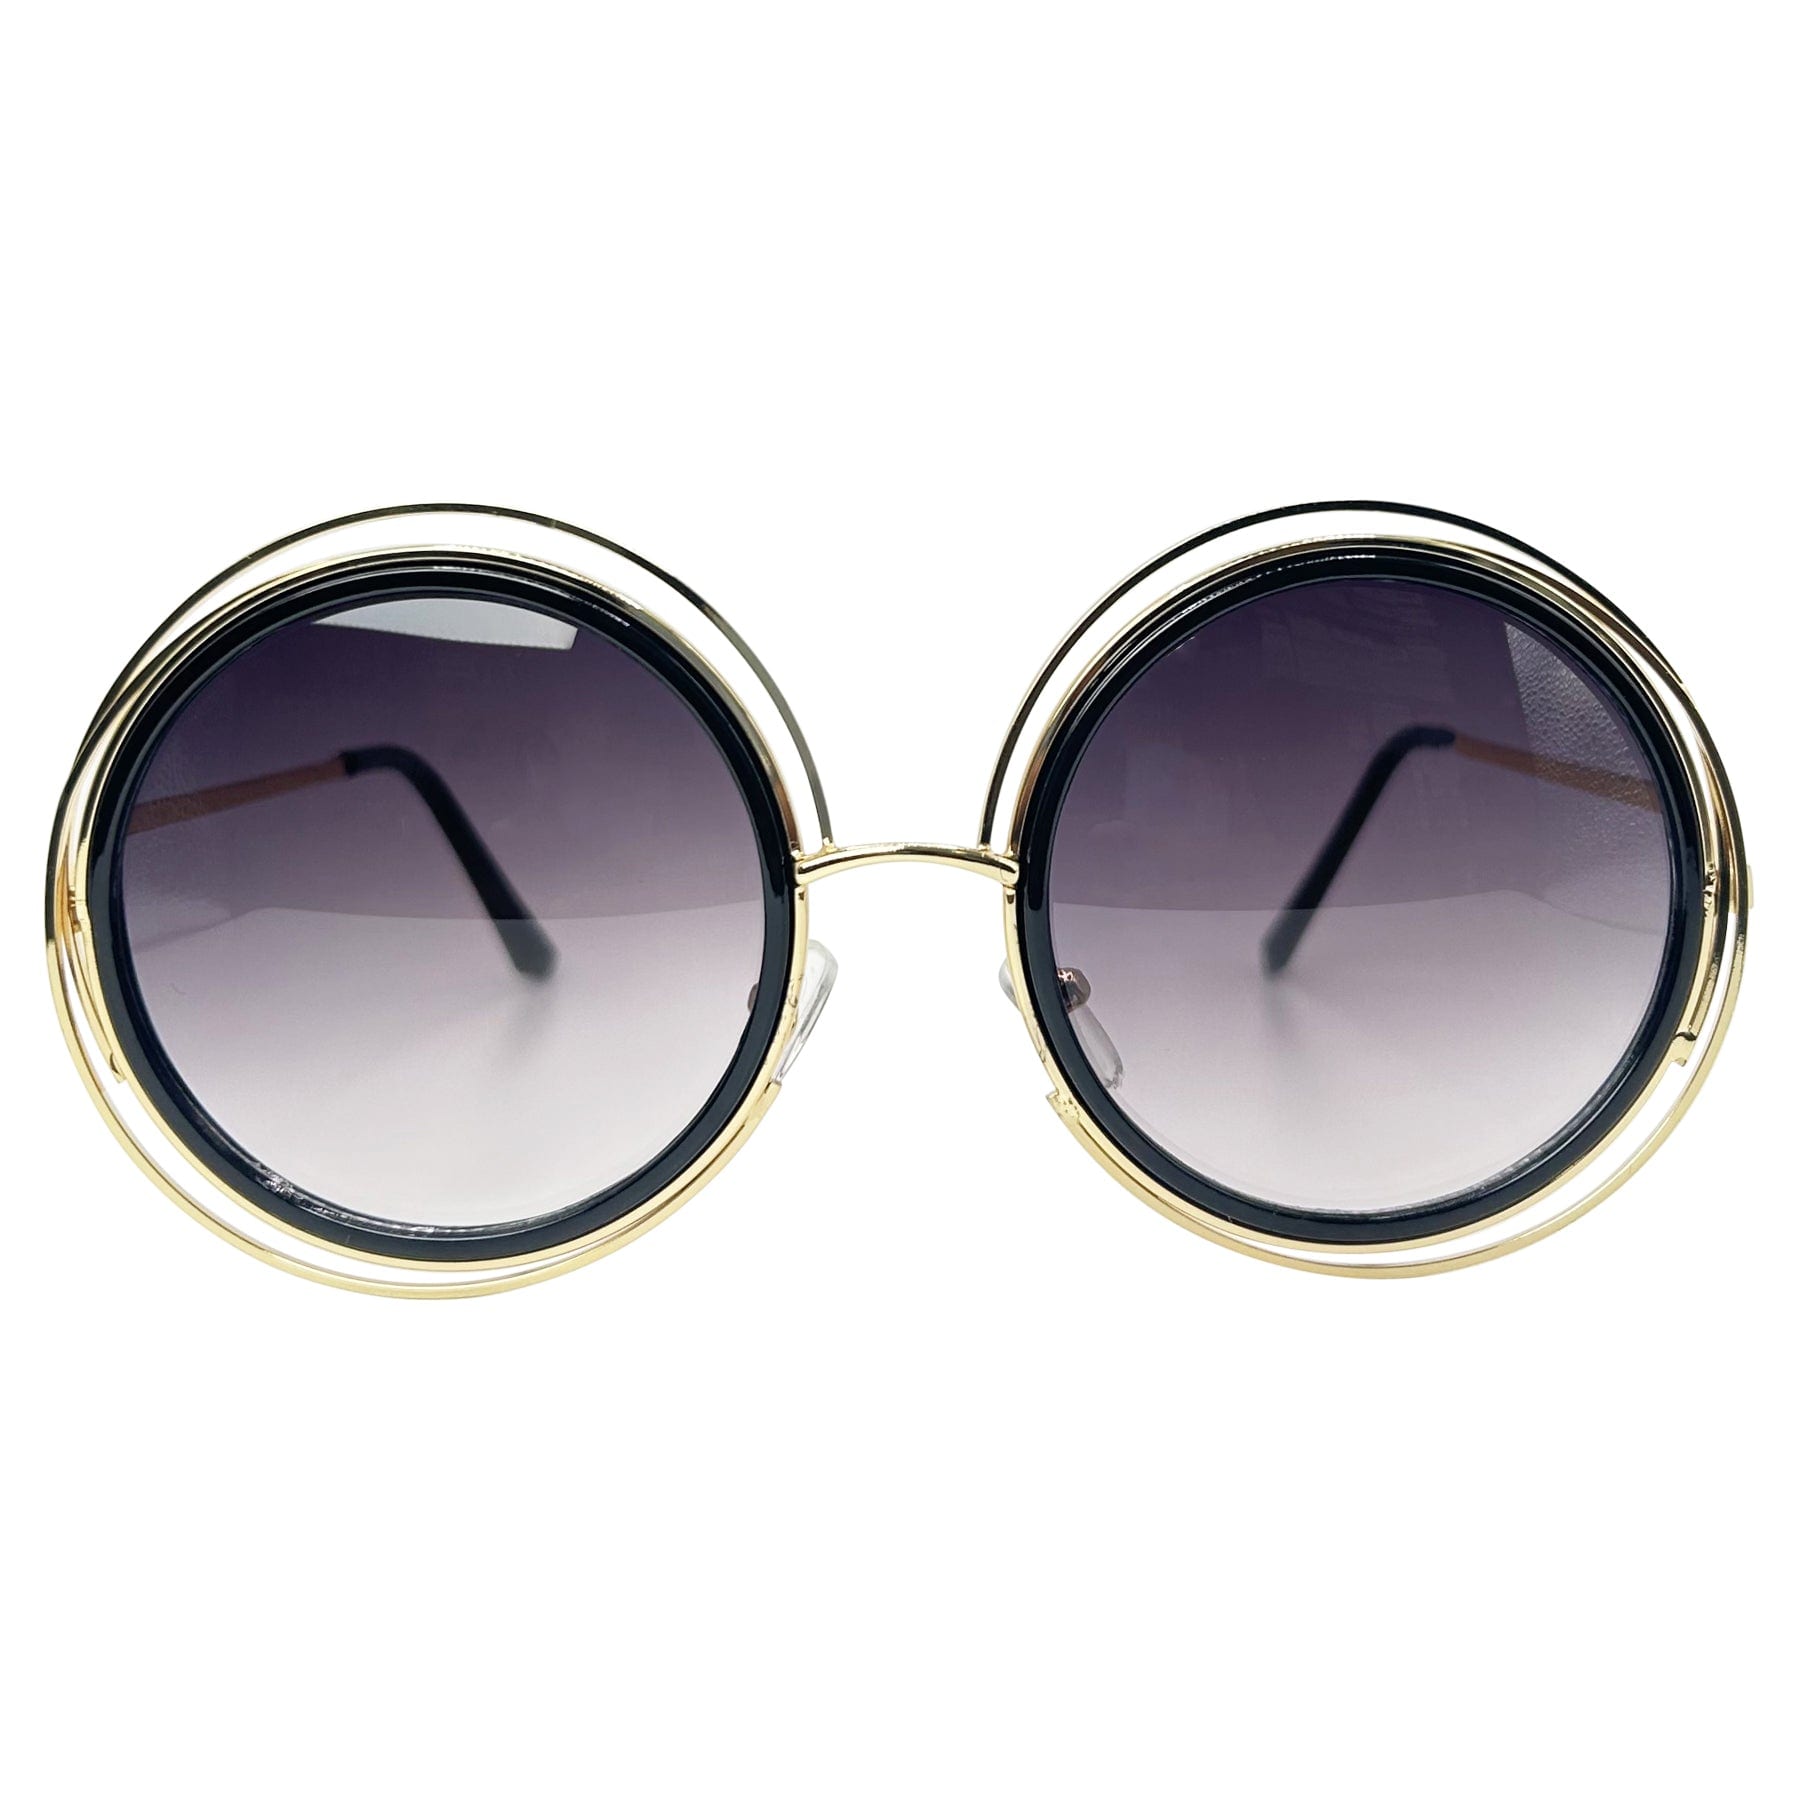 unique retro sunglasses with a metal frame and smoke lens